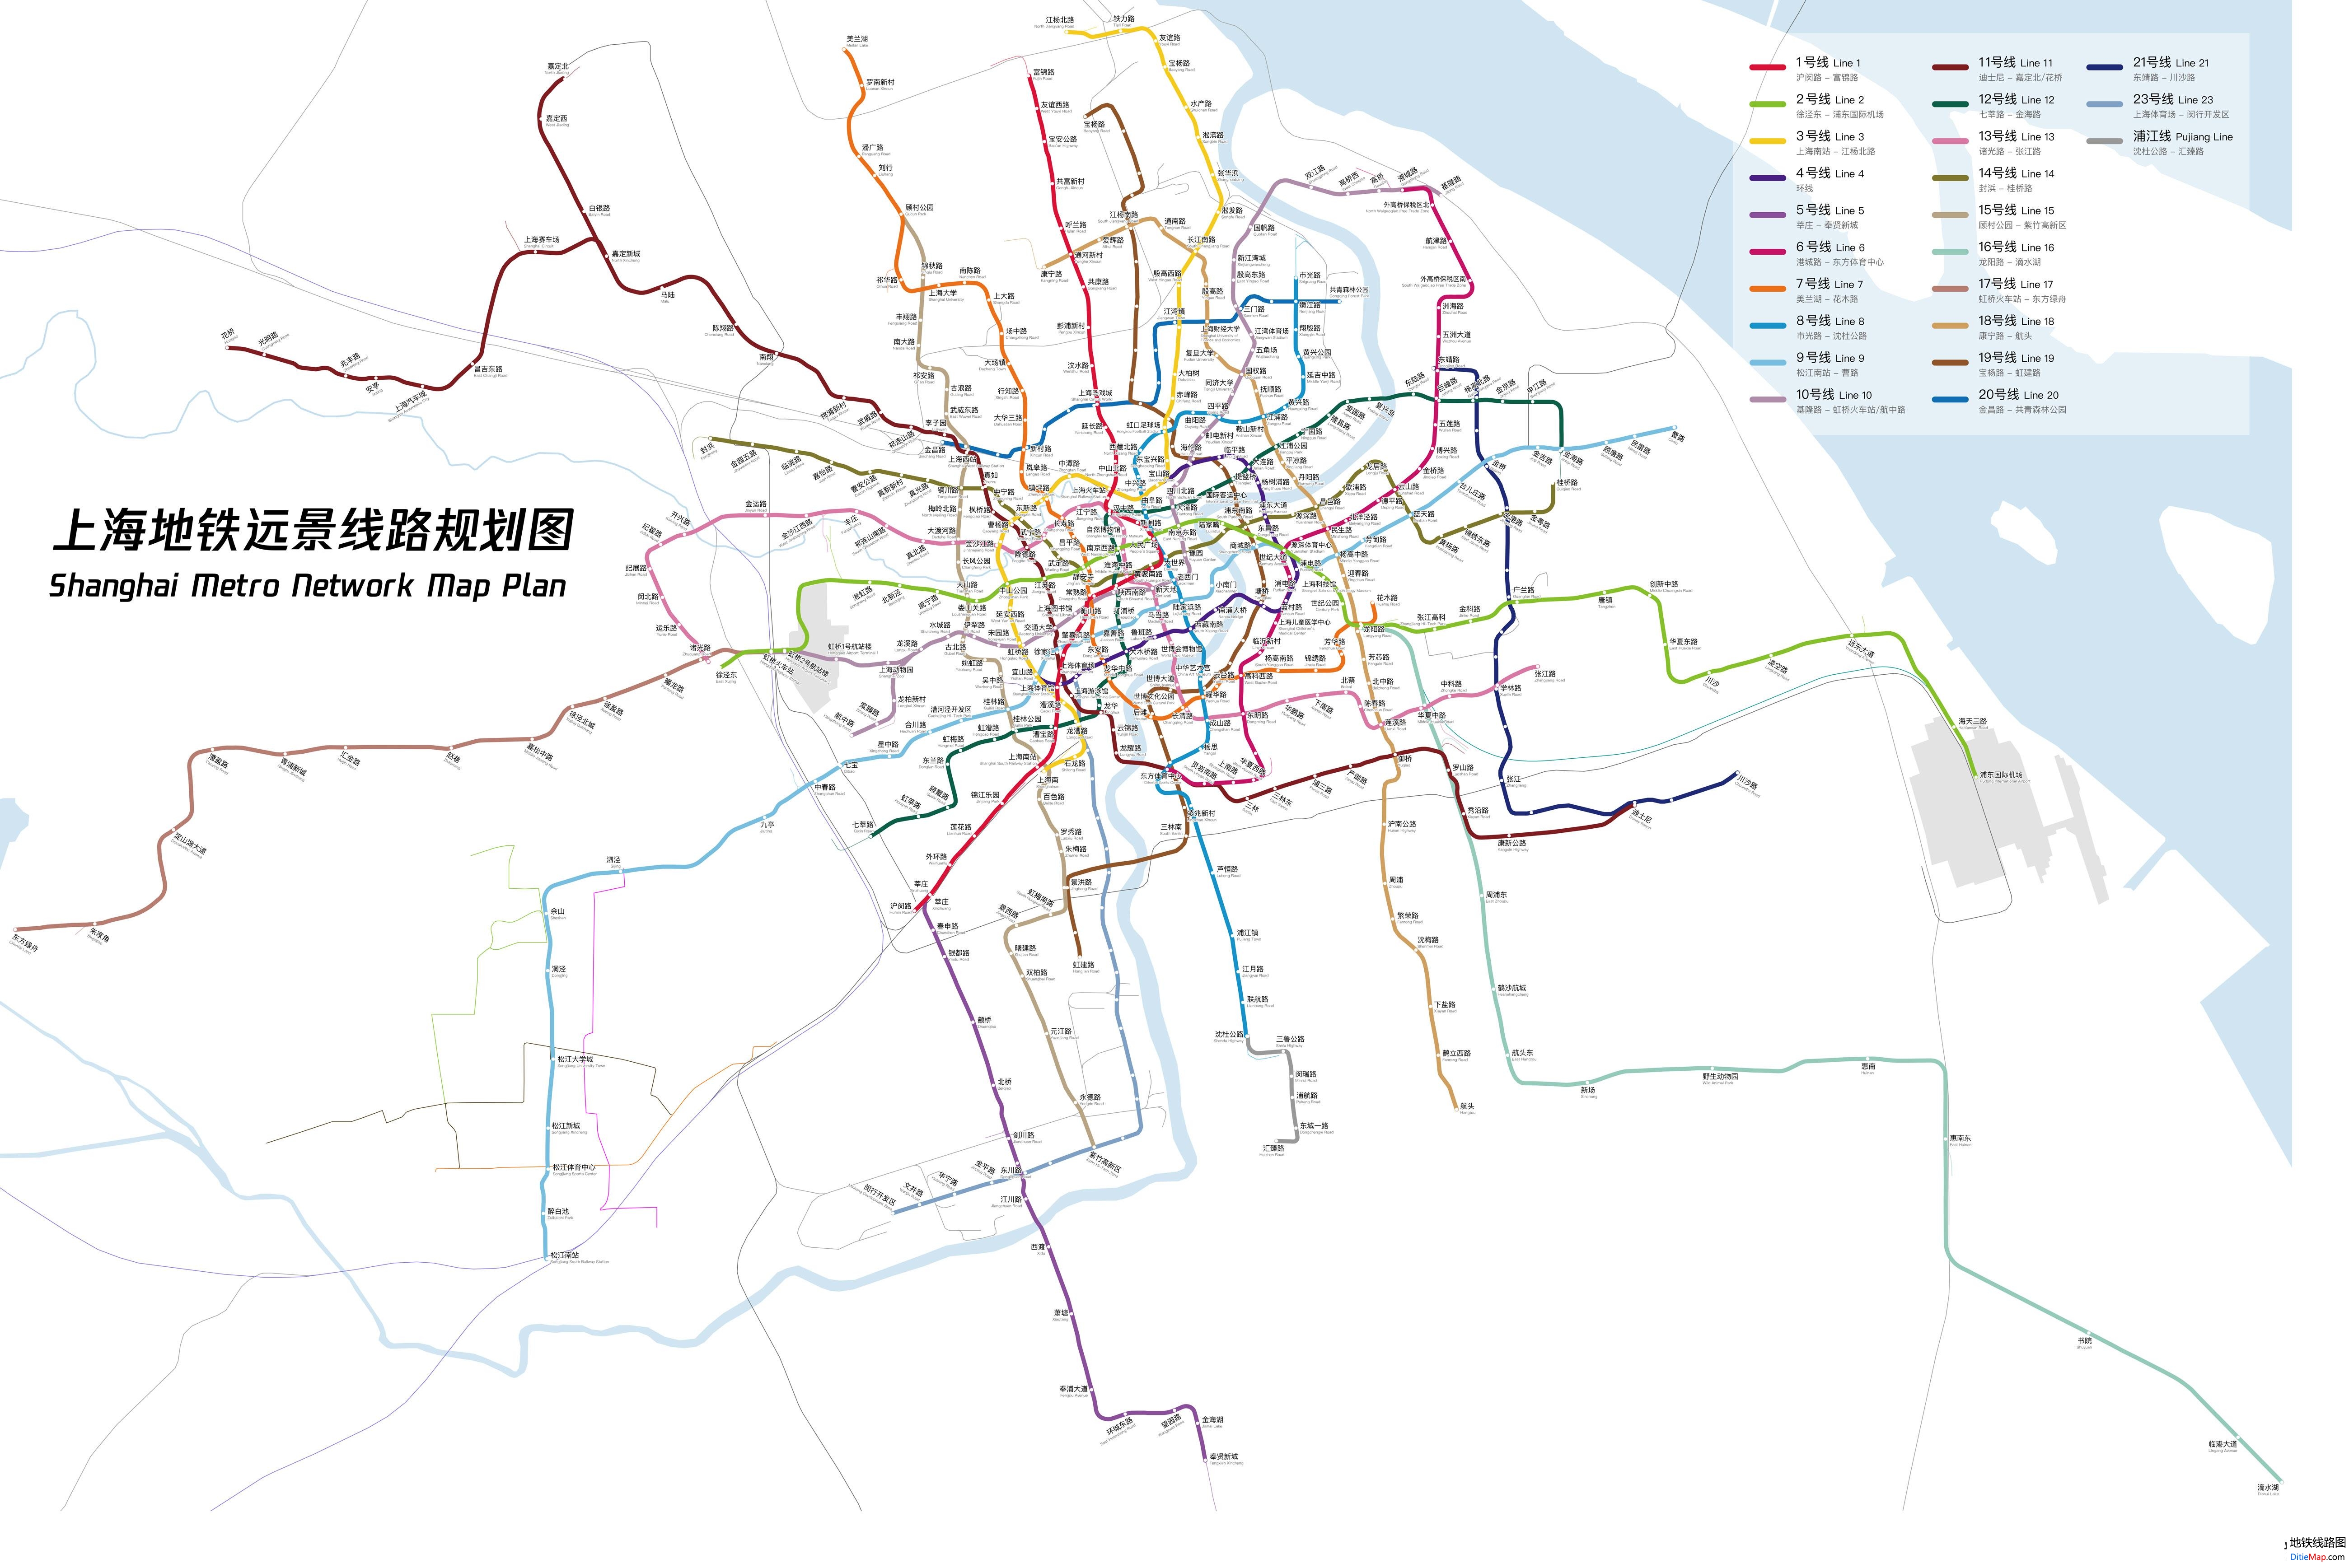 上海地铁线路图 运营时间票价站点 查询下载 上海地铁线路图 上海地铁